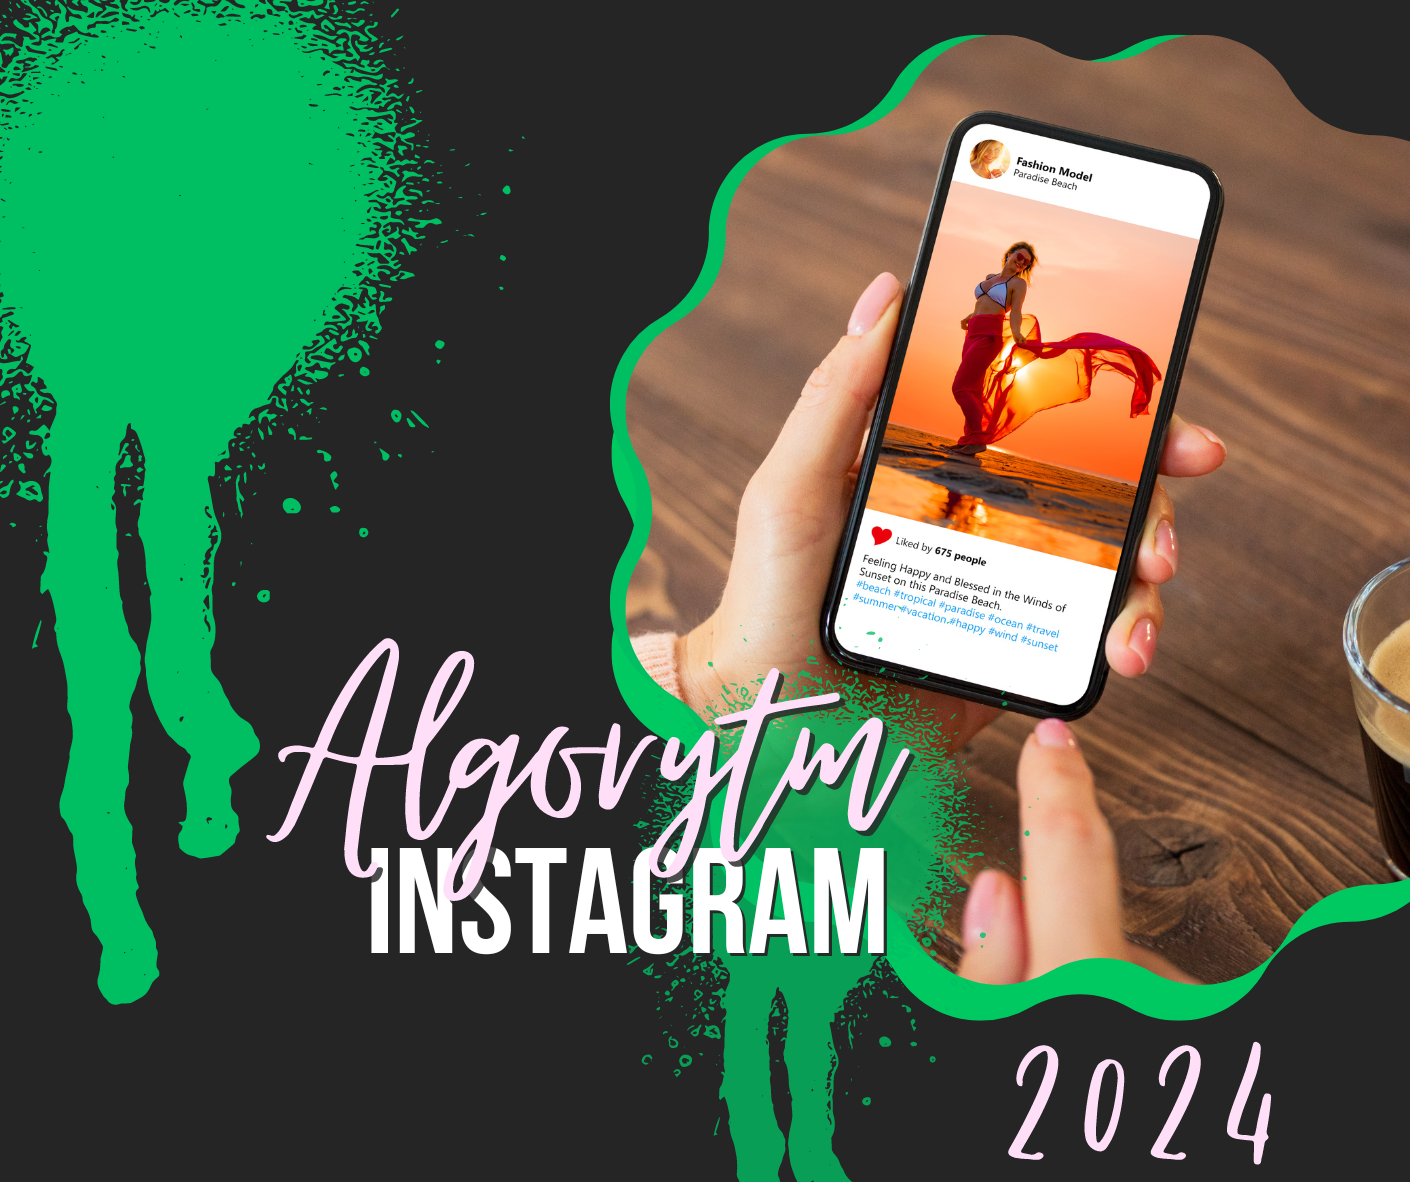 Jak działa algorytm Instagrama w 2024?